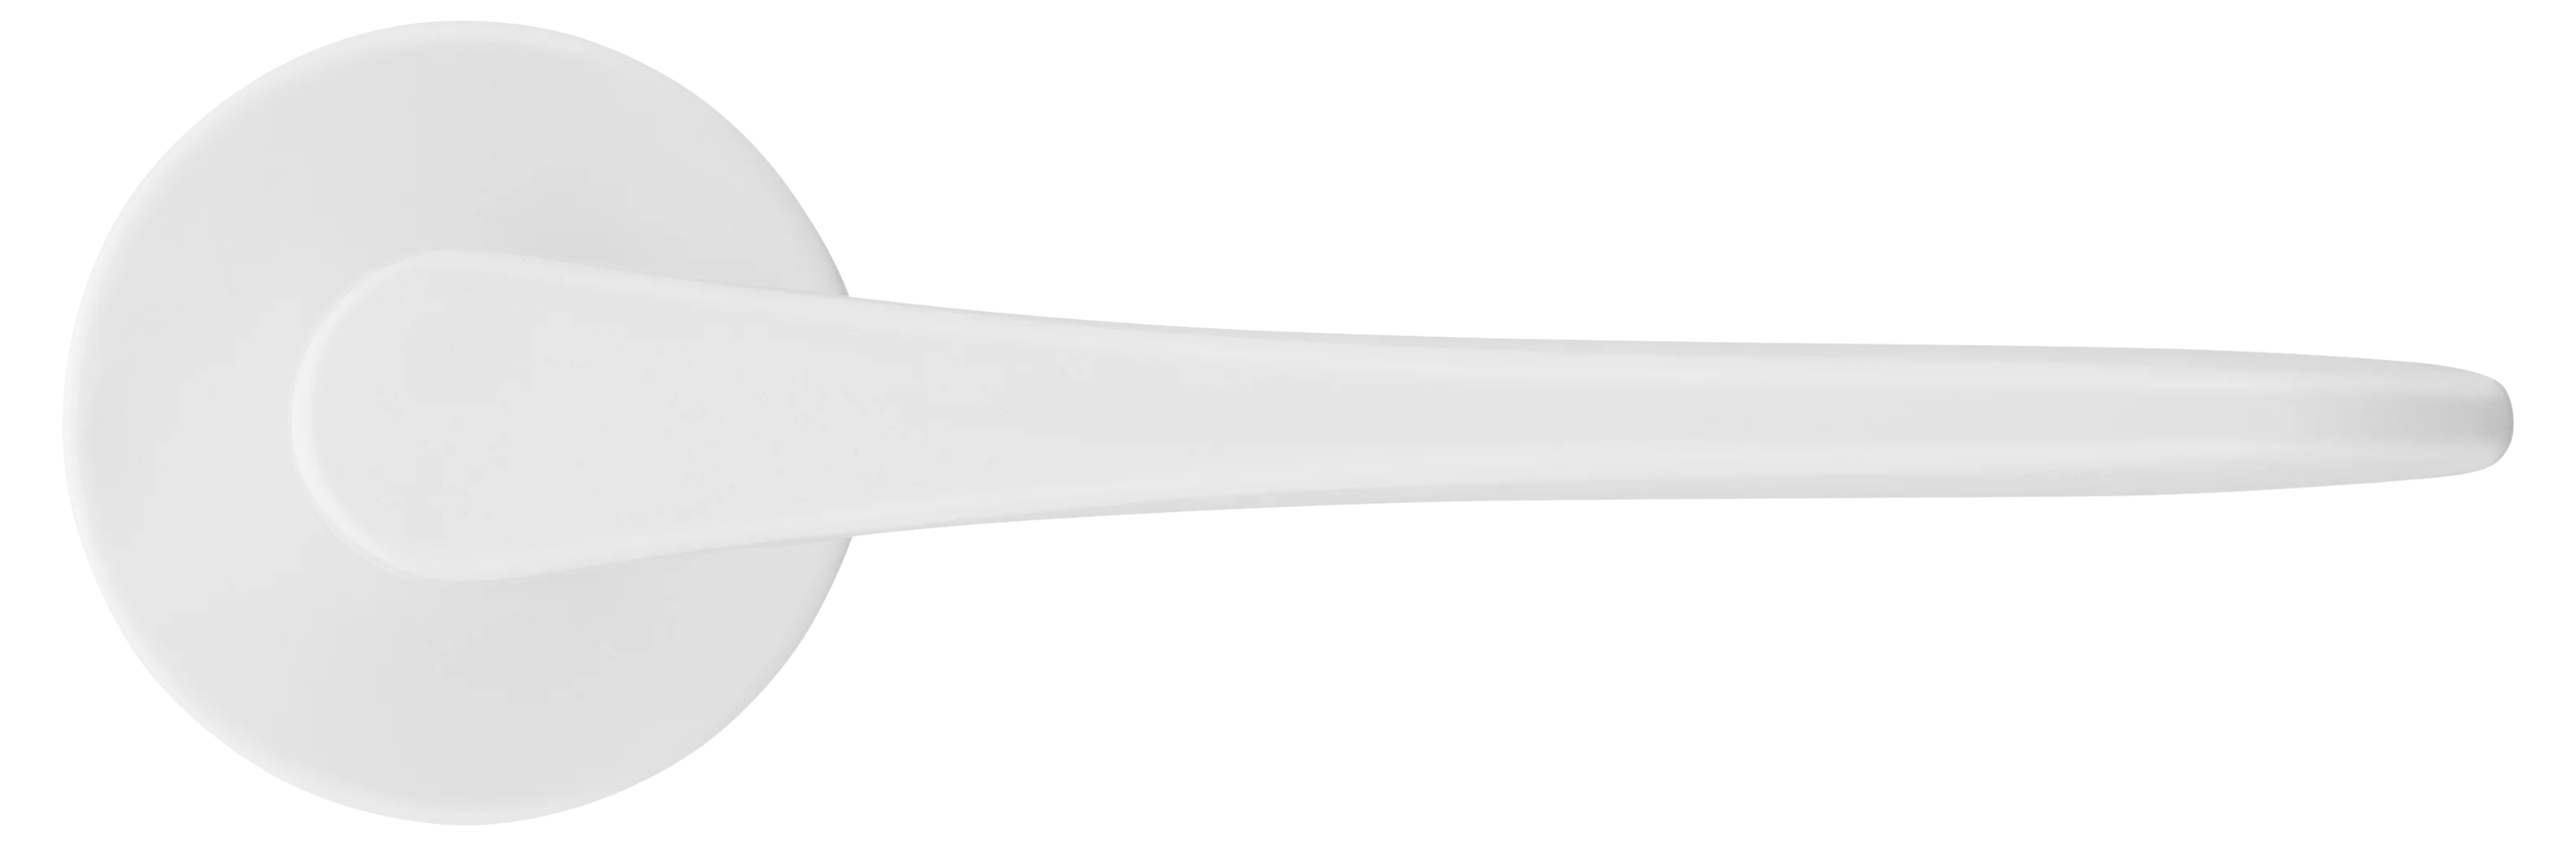 AULA R5 BIA, ручка дверная на розетке 7мм, цвет -  белый фото купить в Ижевске